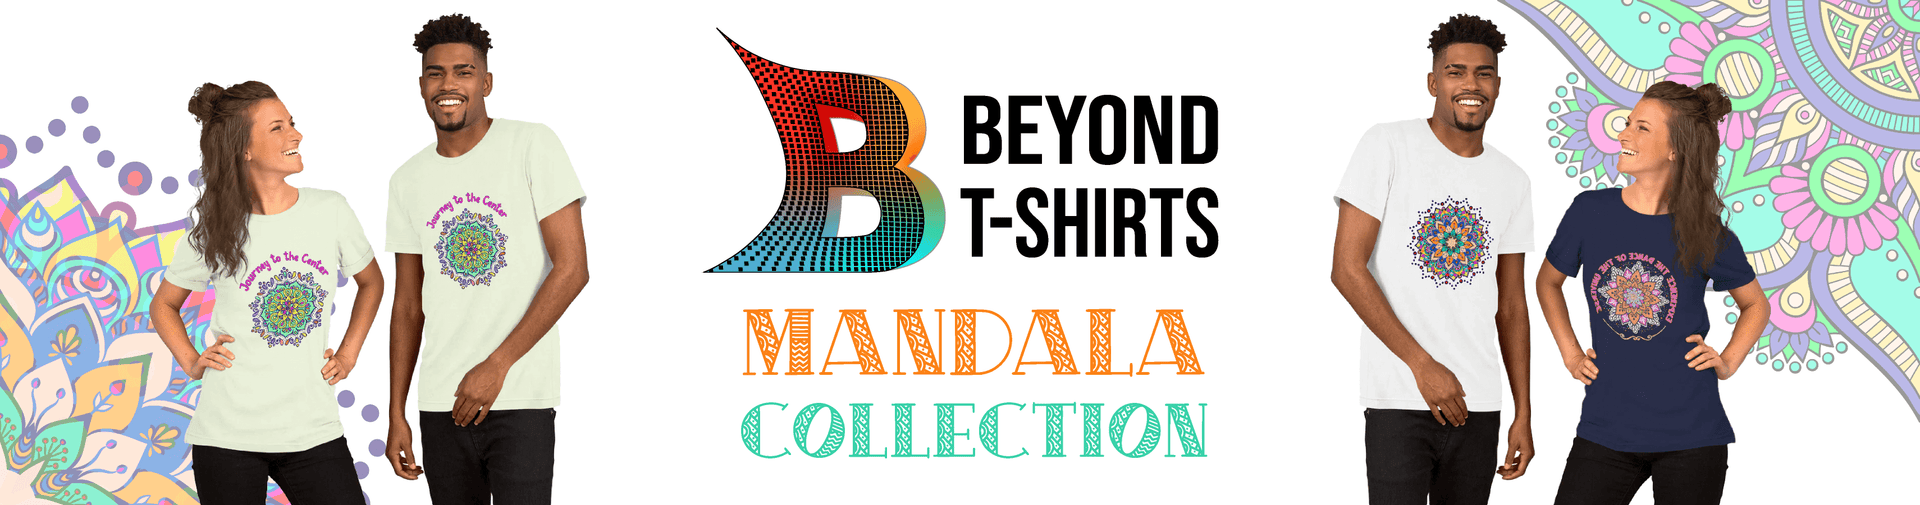 Beyond T-shirts